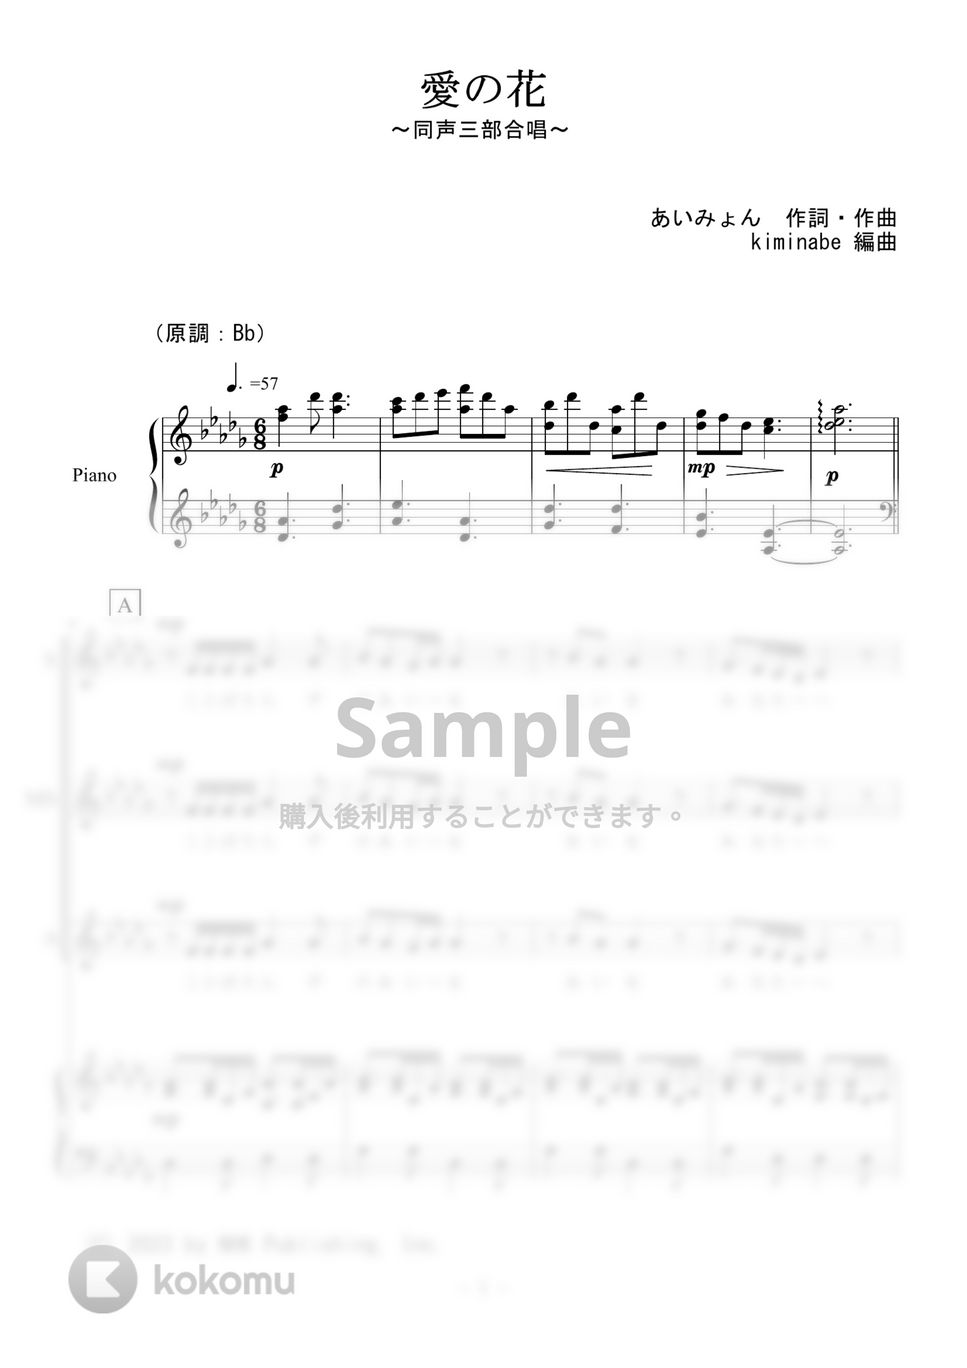 あいみょん - 愛の花 (同声三部合唱) by kiminabe